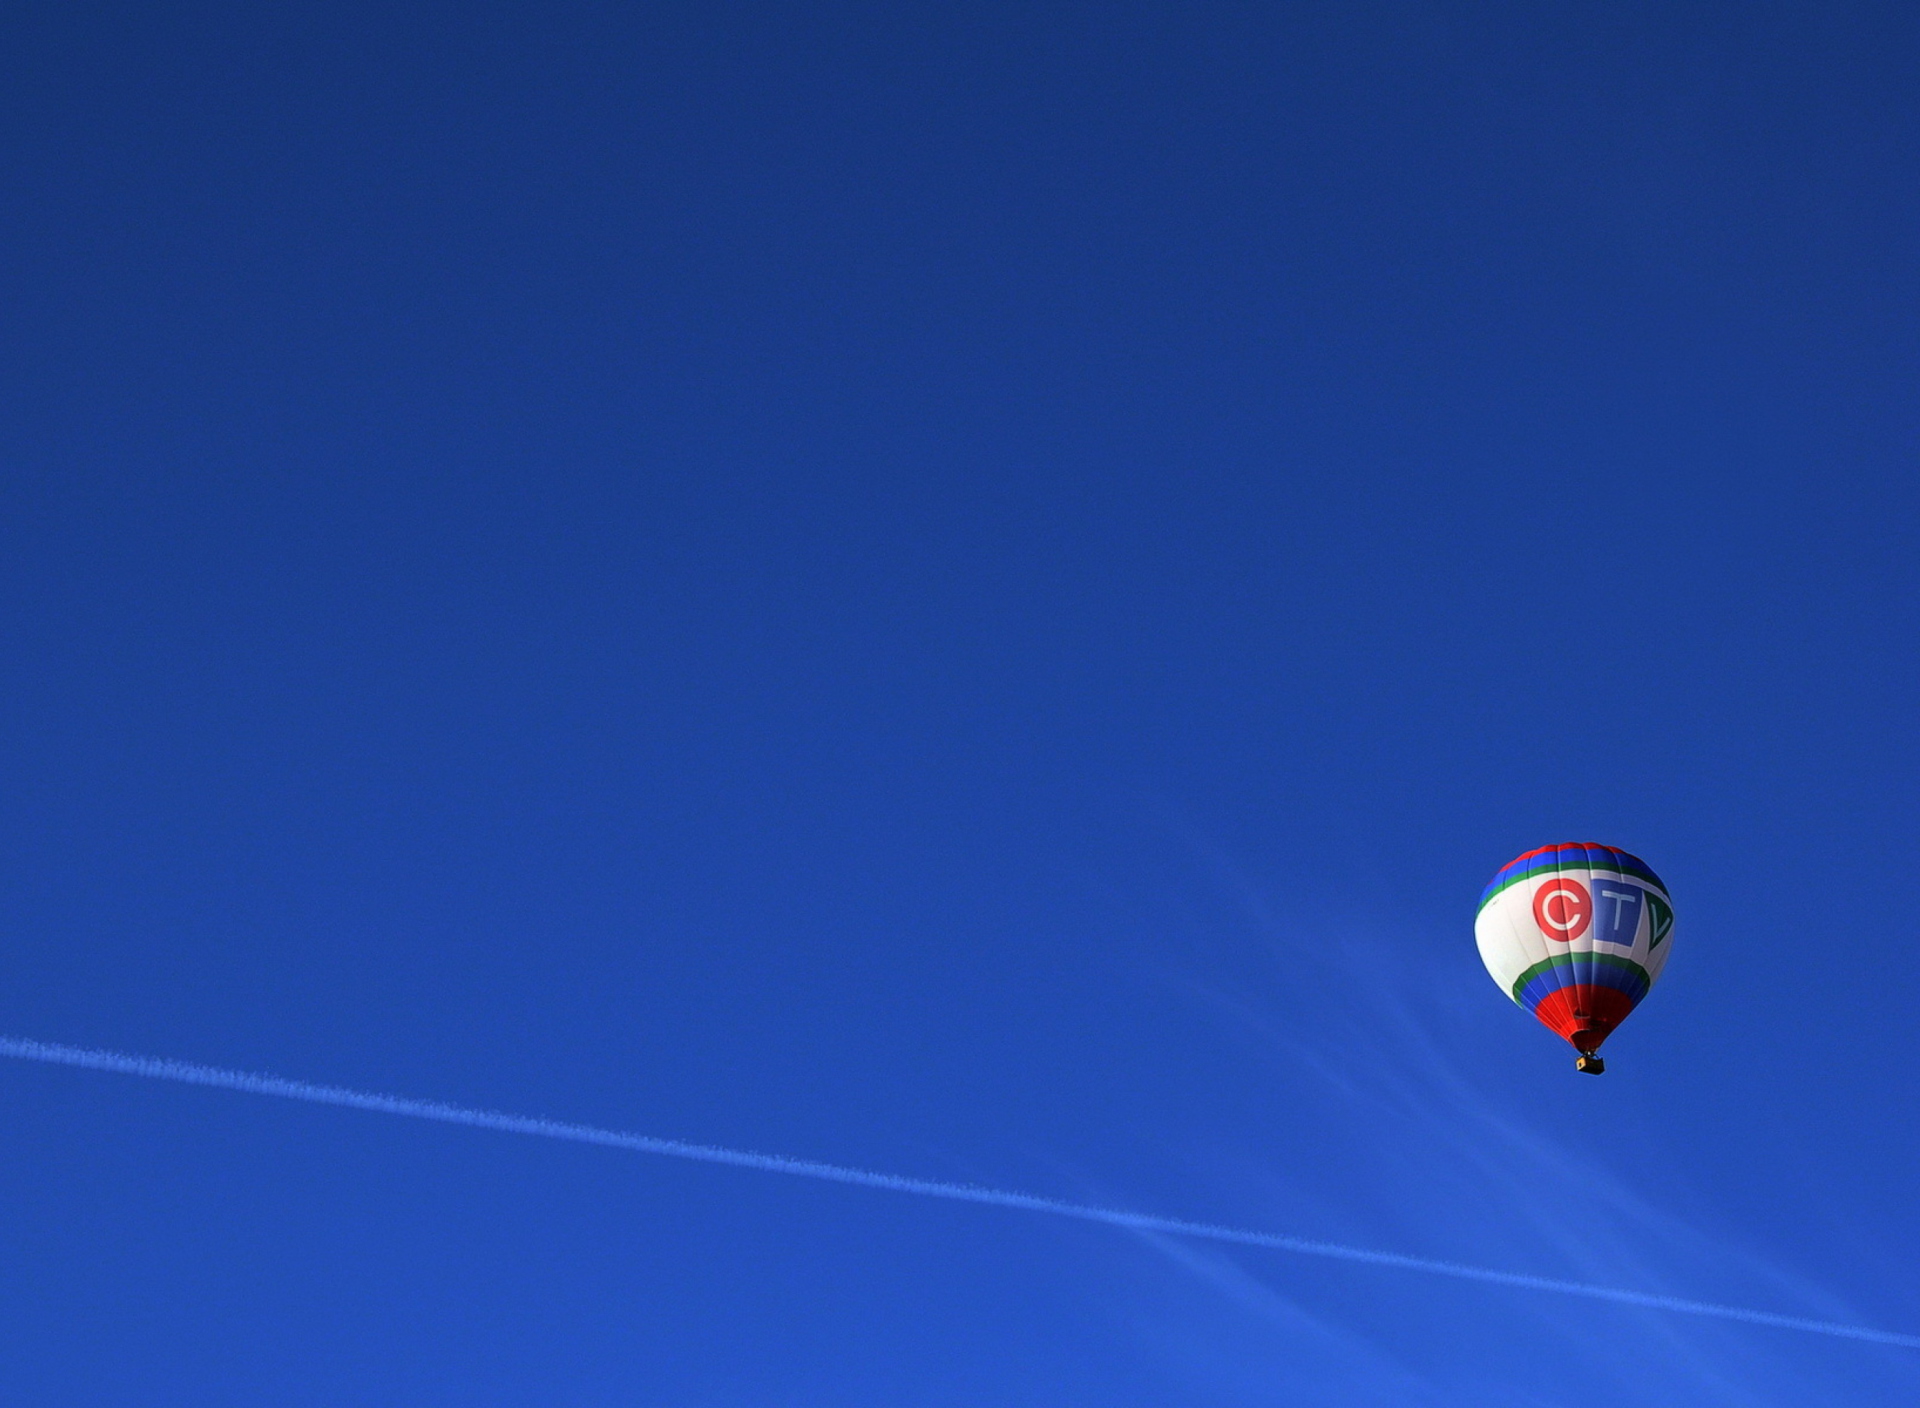 Обои Balloon In Blue Sky 1920x1408